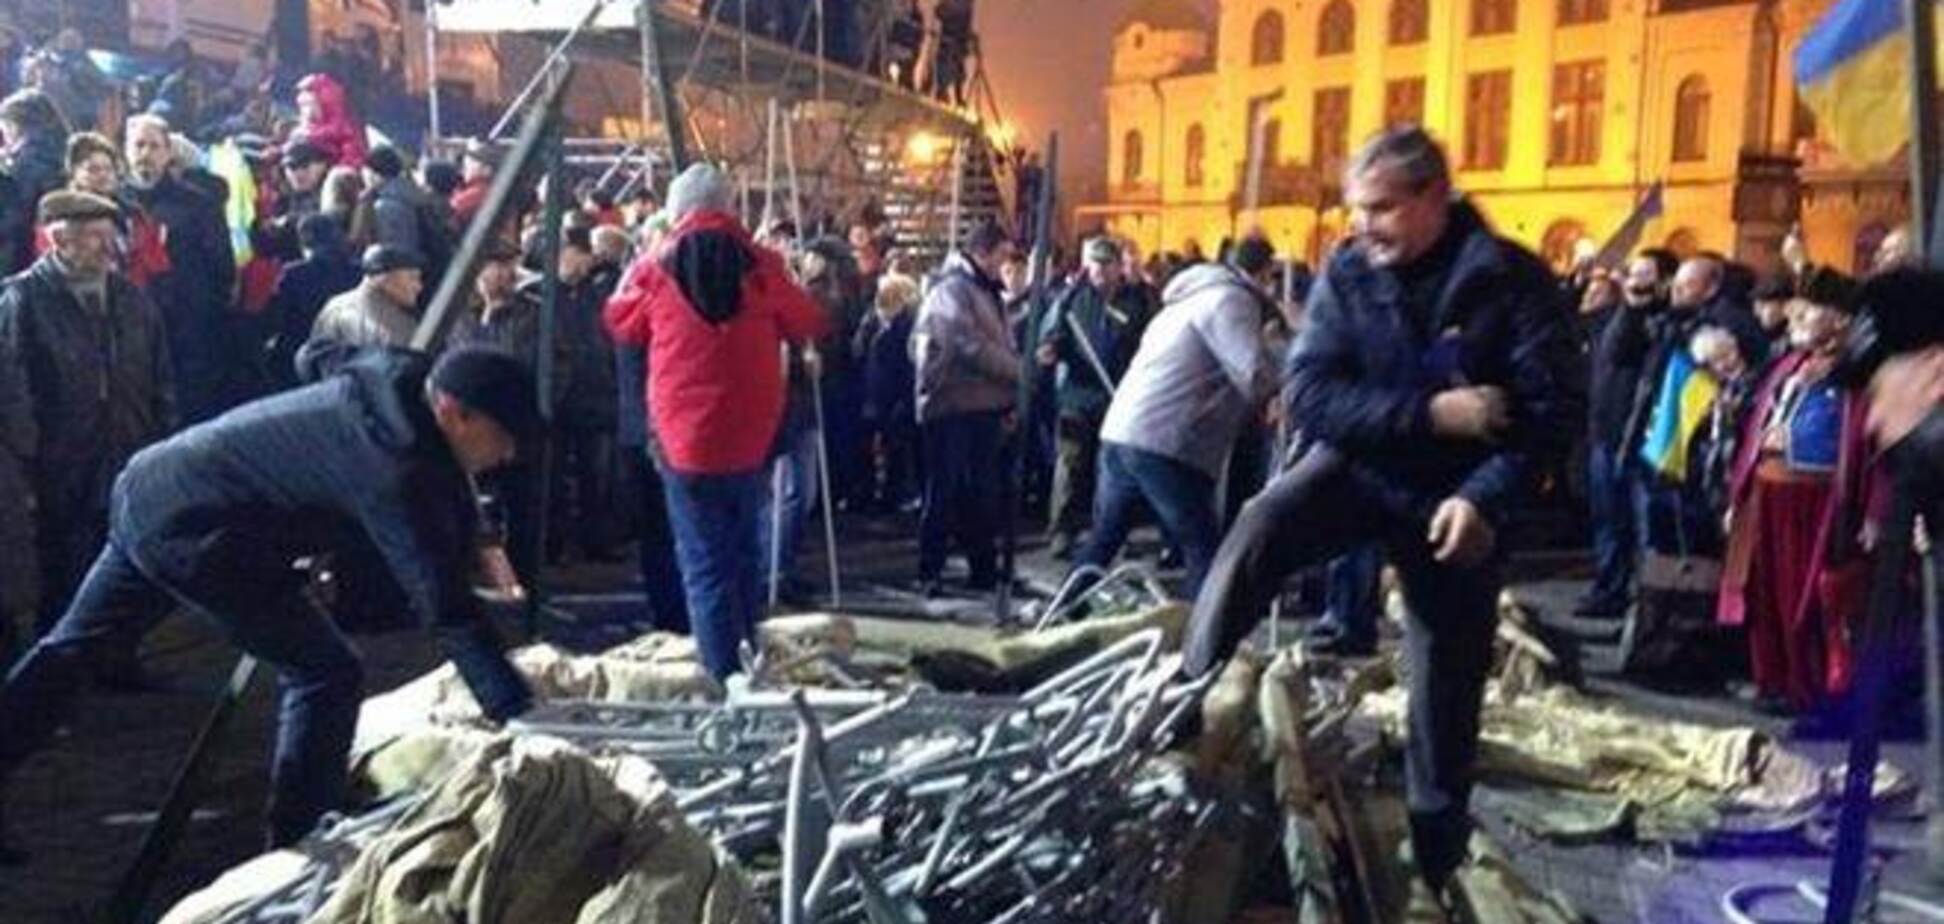 Кияни продовжують скаржитися на Евромайдан - МВС